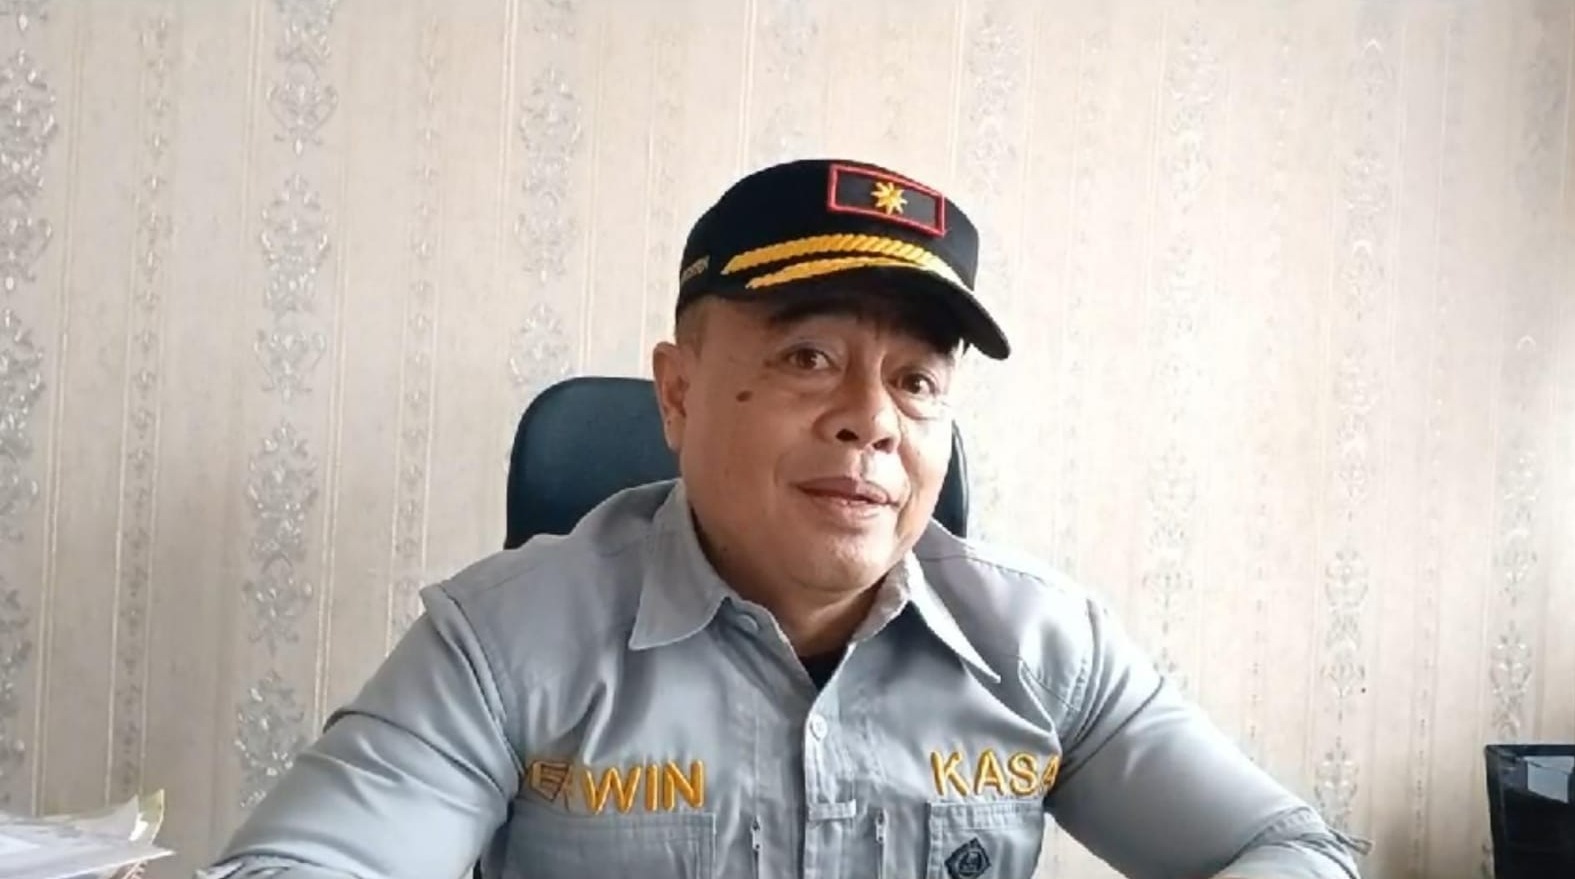 Amankan Libur Tahun Baru, Satpol PP Bengkulu Selatan Terjunkan Ratusan Personel